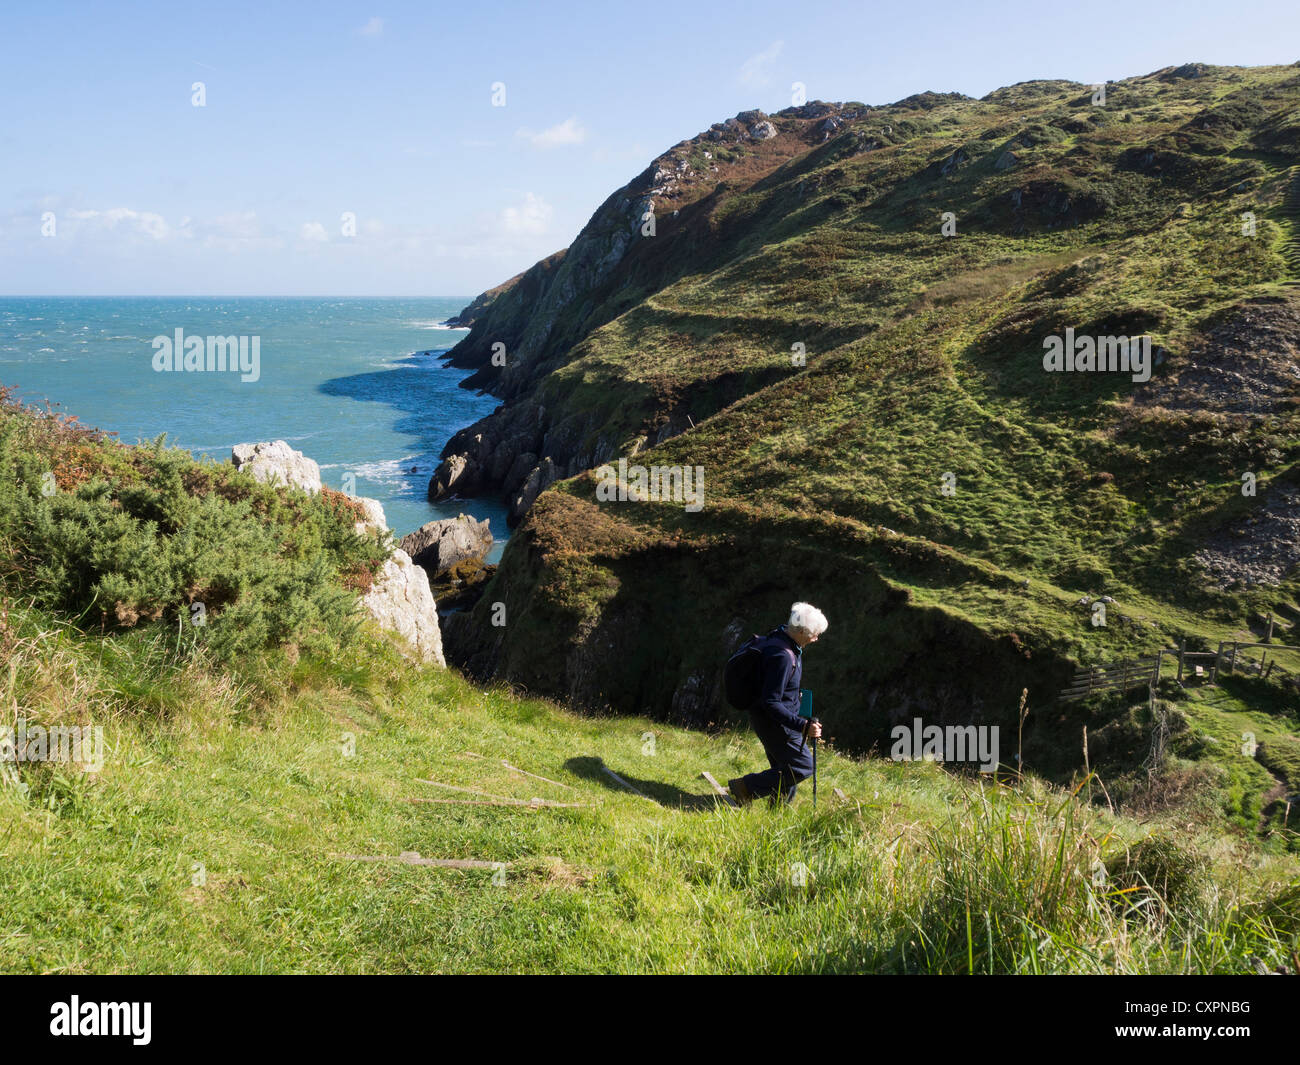 Persona che cammina verso il basso gradino ripido tratto di isola di Anglesey sentiero costiero con vista della frastagliata linea costiera a Hell's bocca. Cemaes Anglesey Wales UK Foto Stock